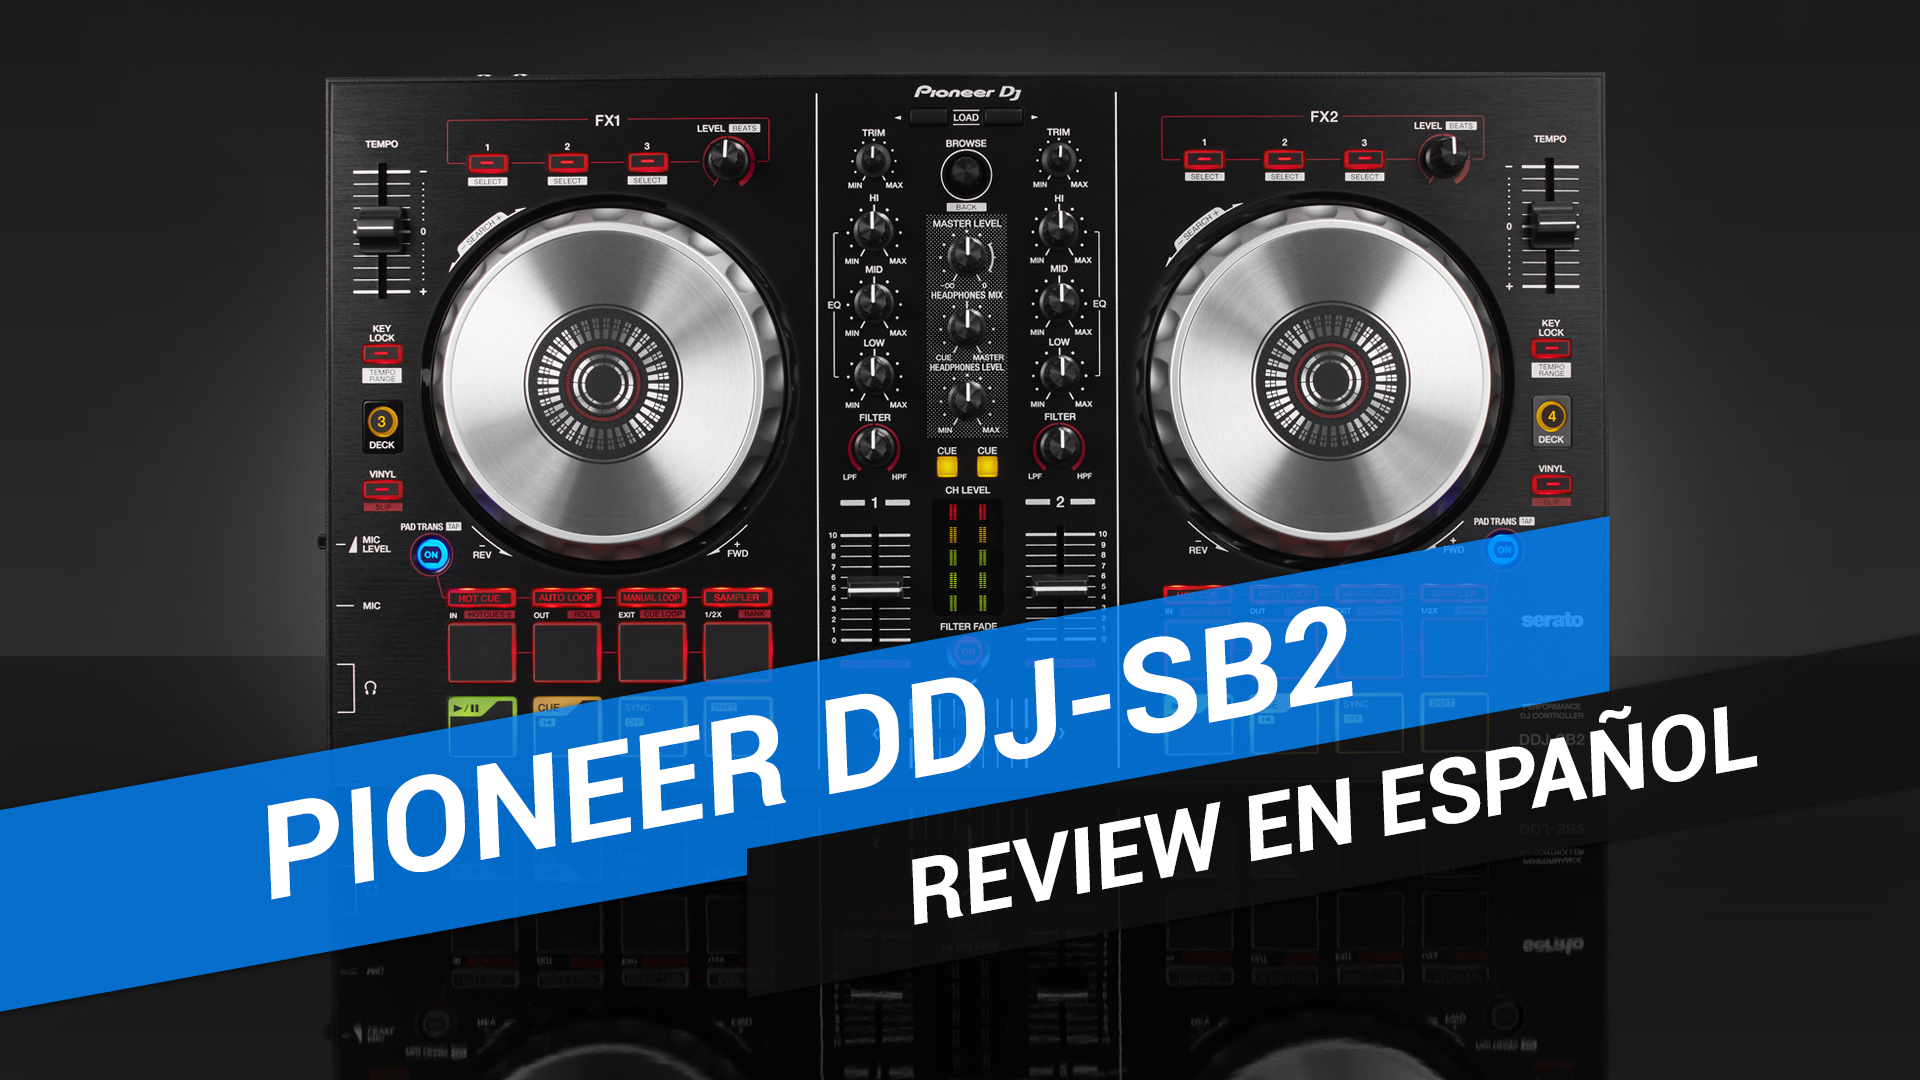 Review y unboxing en español del Pioneer DDJ-SB2